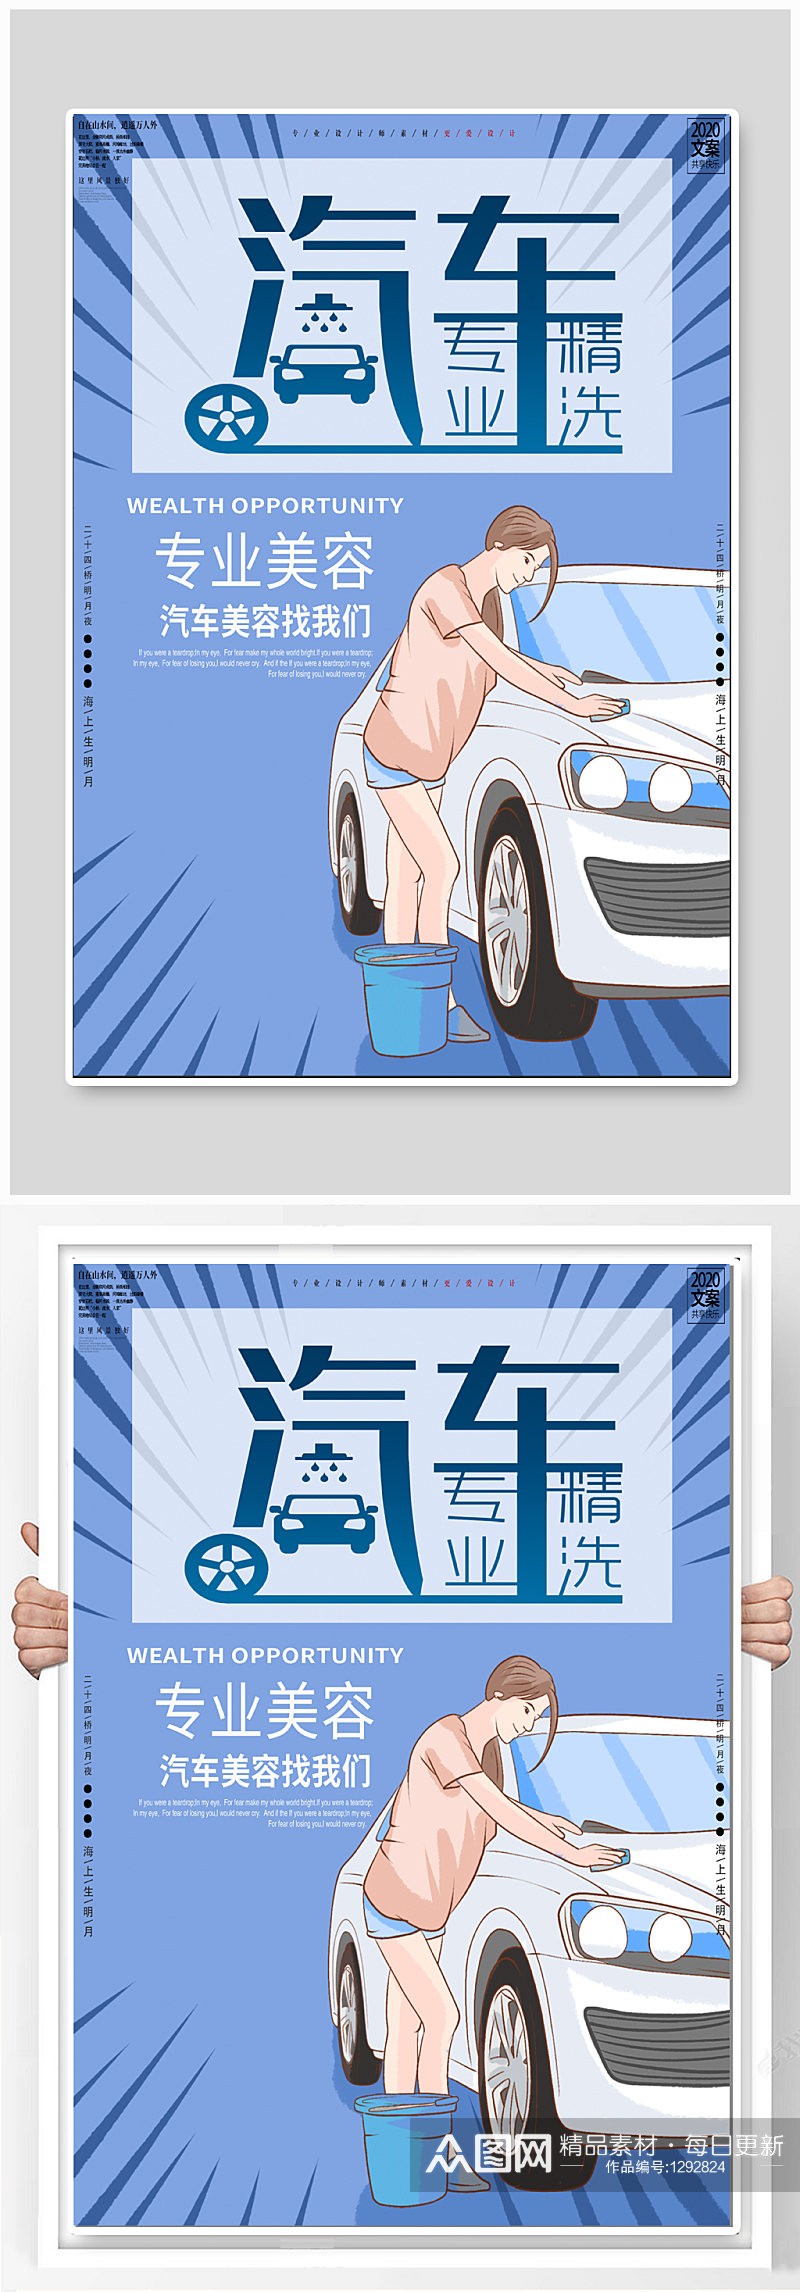 汽车精洗洗车房宣传海报素材